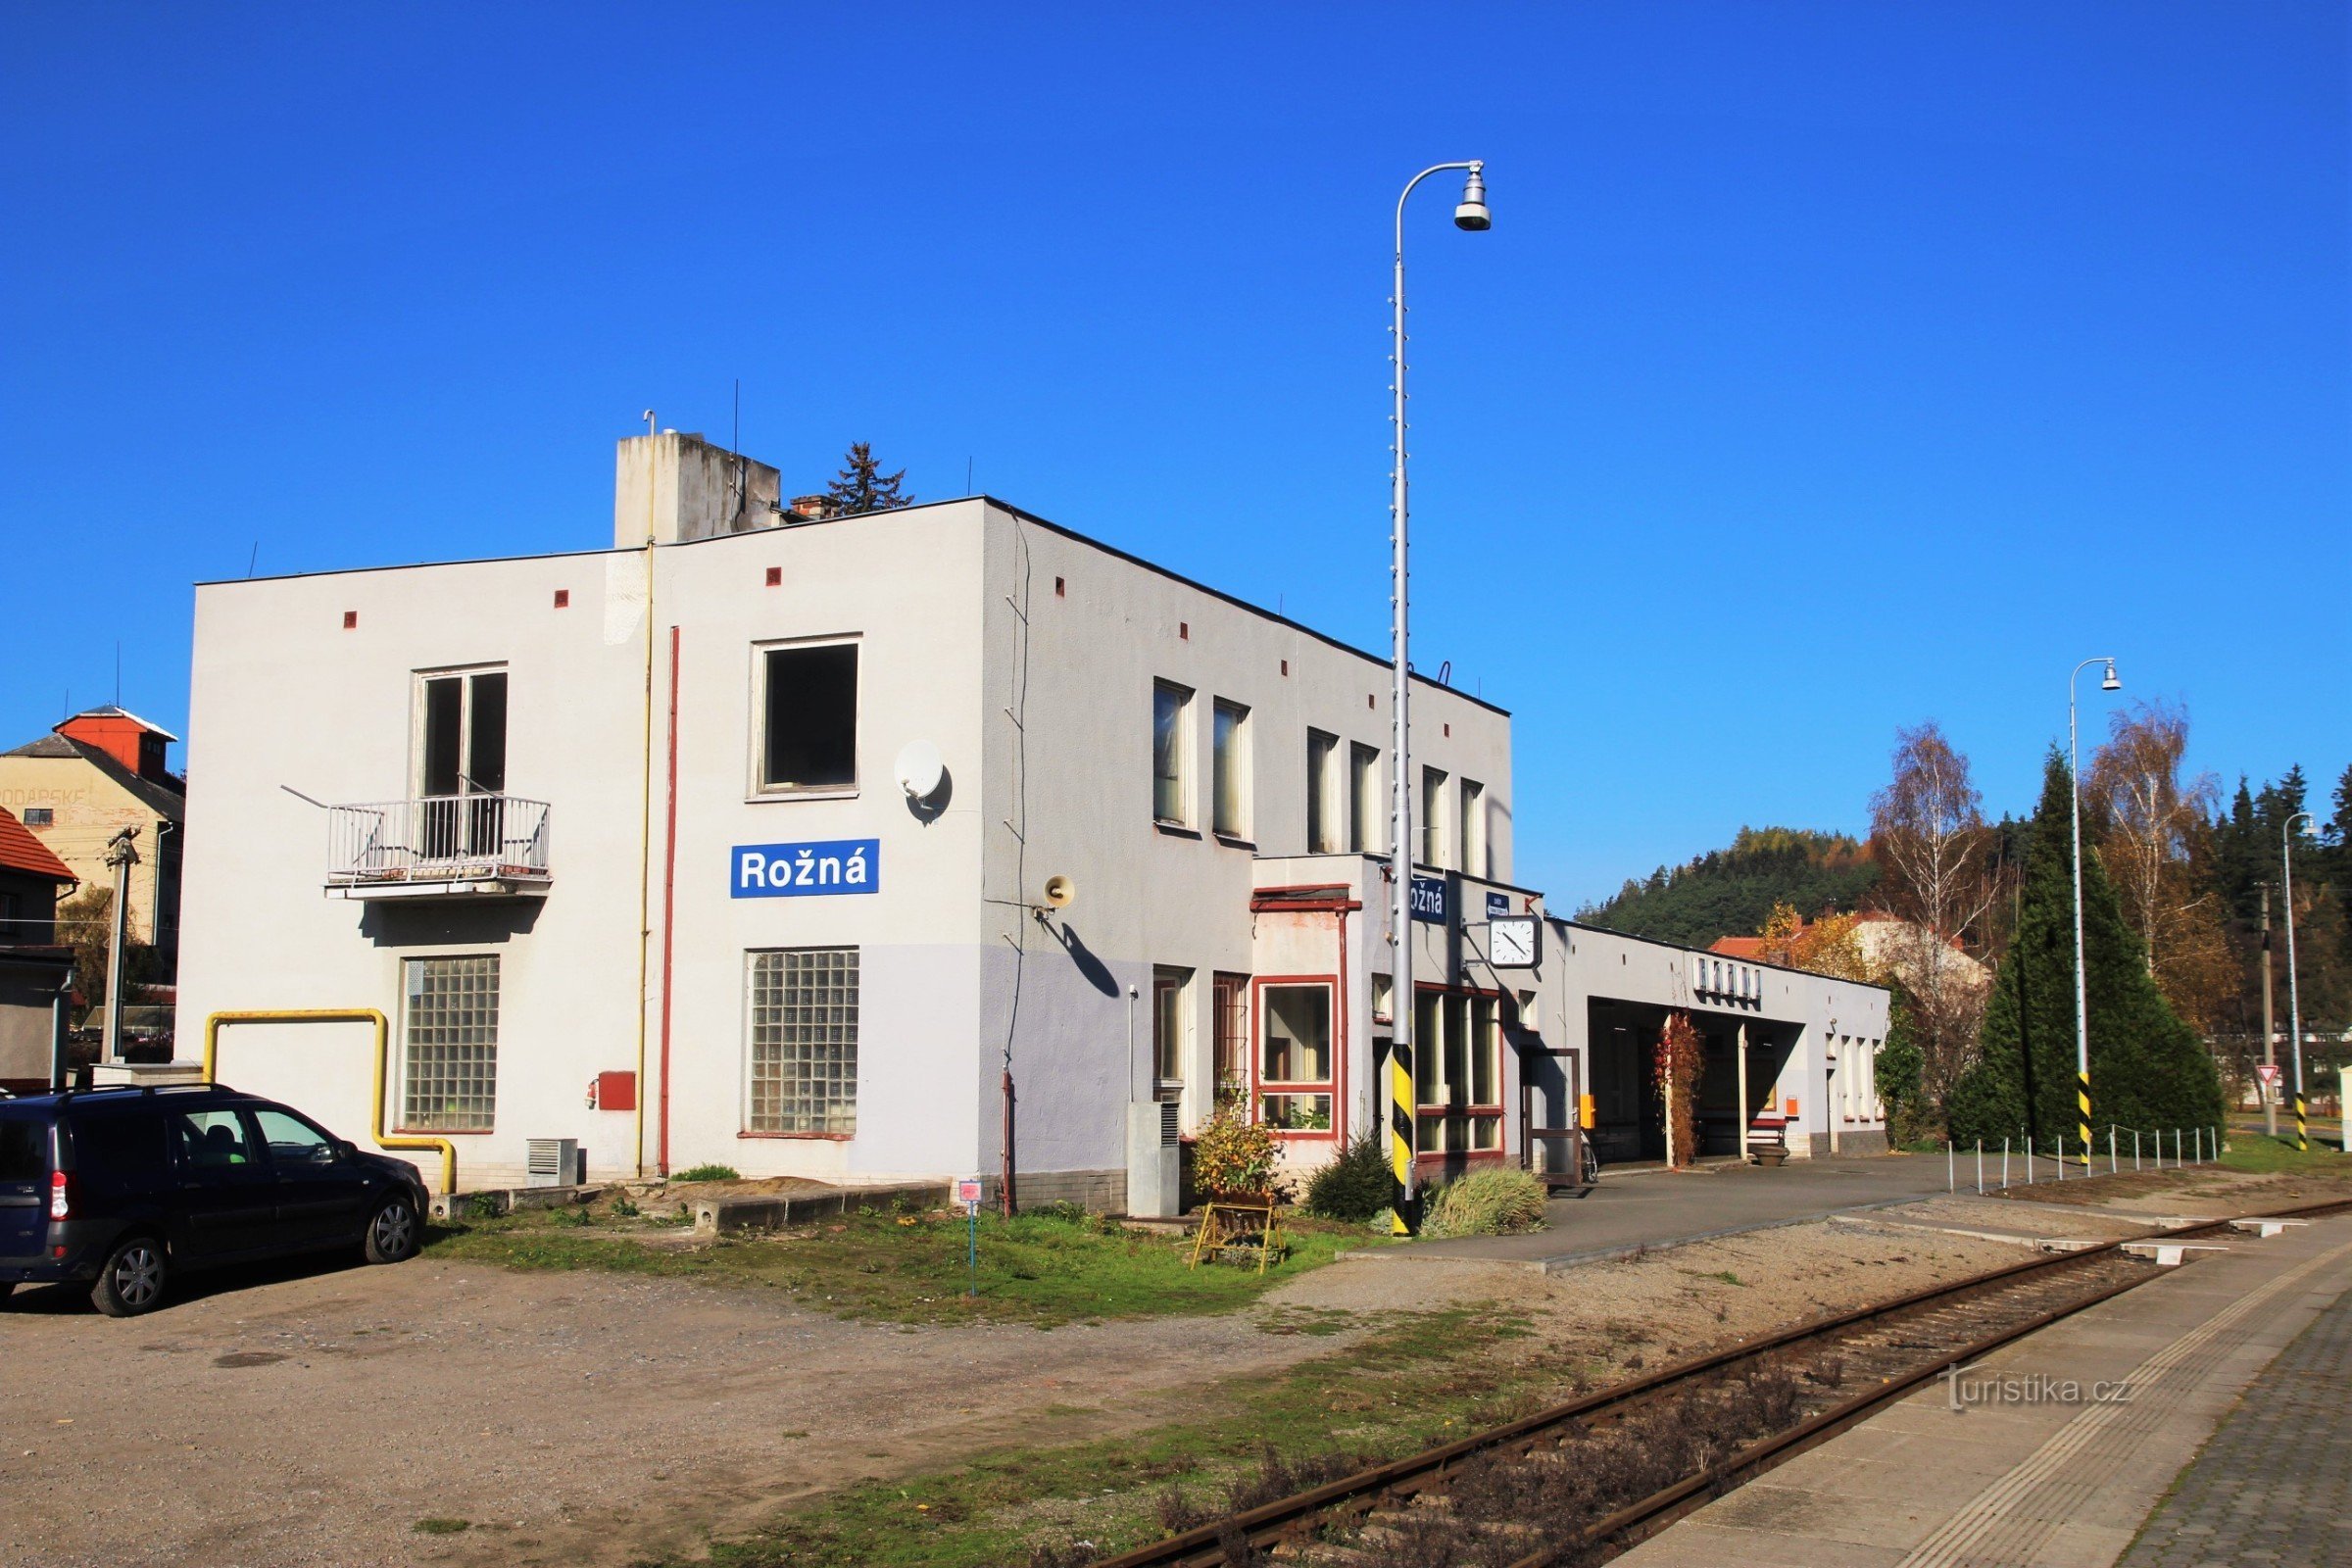 Station i Rožná